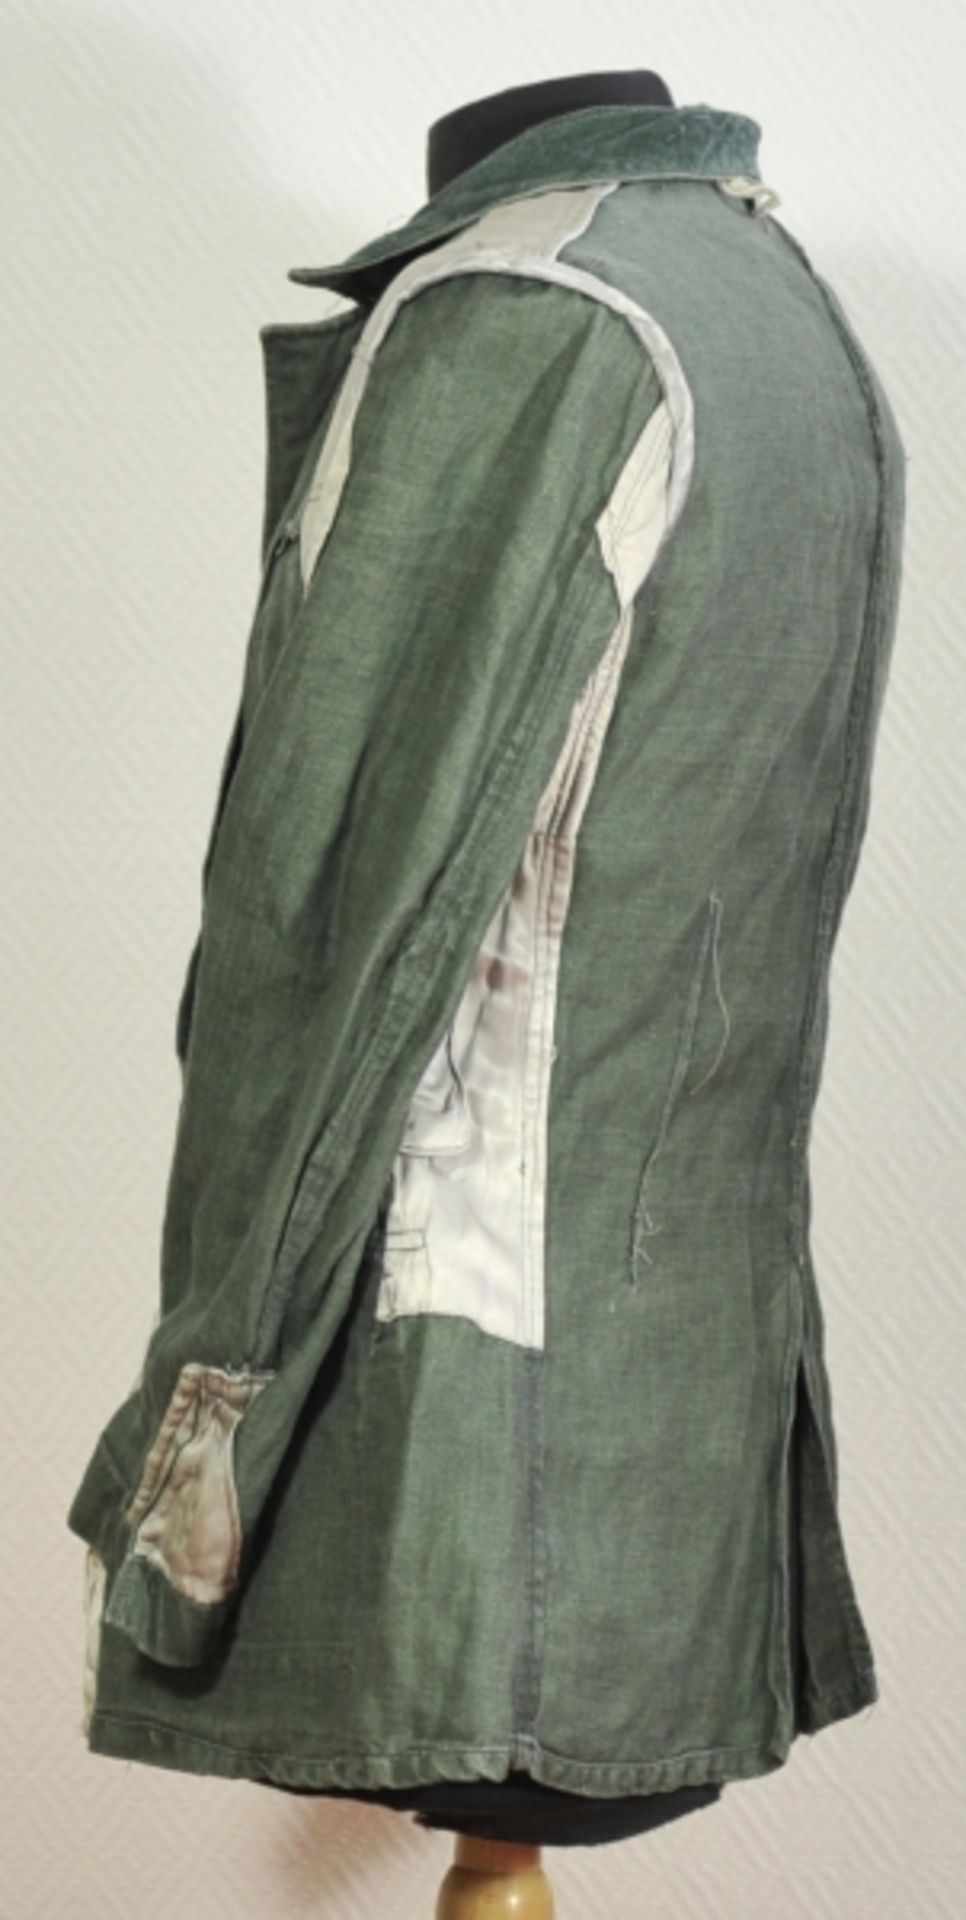 Feldbluse der Wehrmacht.Grünes Tuch, Fischgrätmuster, graue Knöpfe, mit zwei Koppelhaken, die - Image 5 of 5